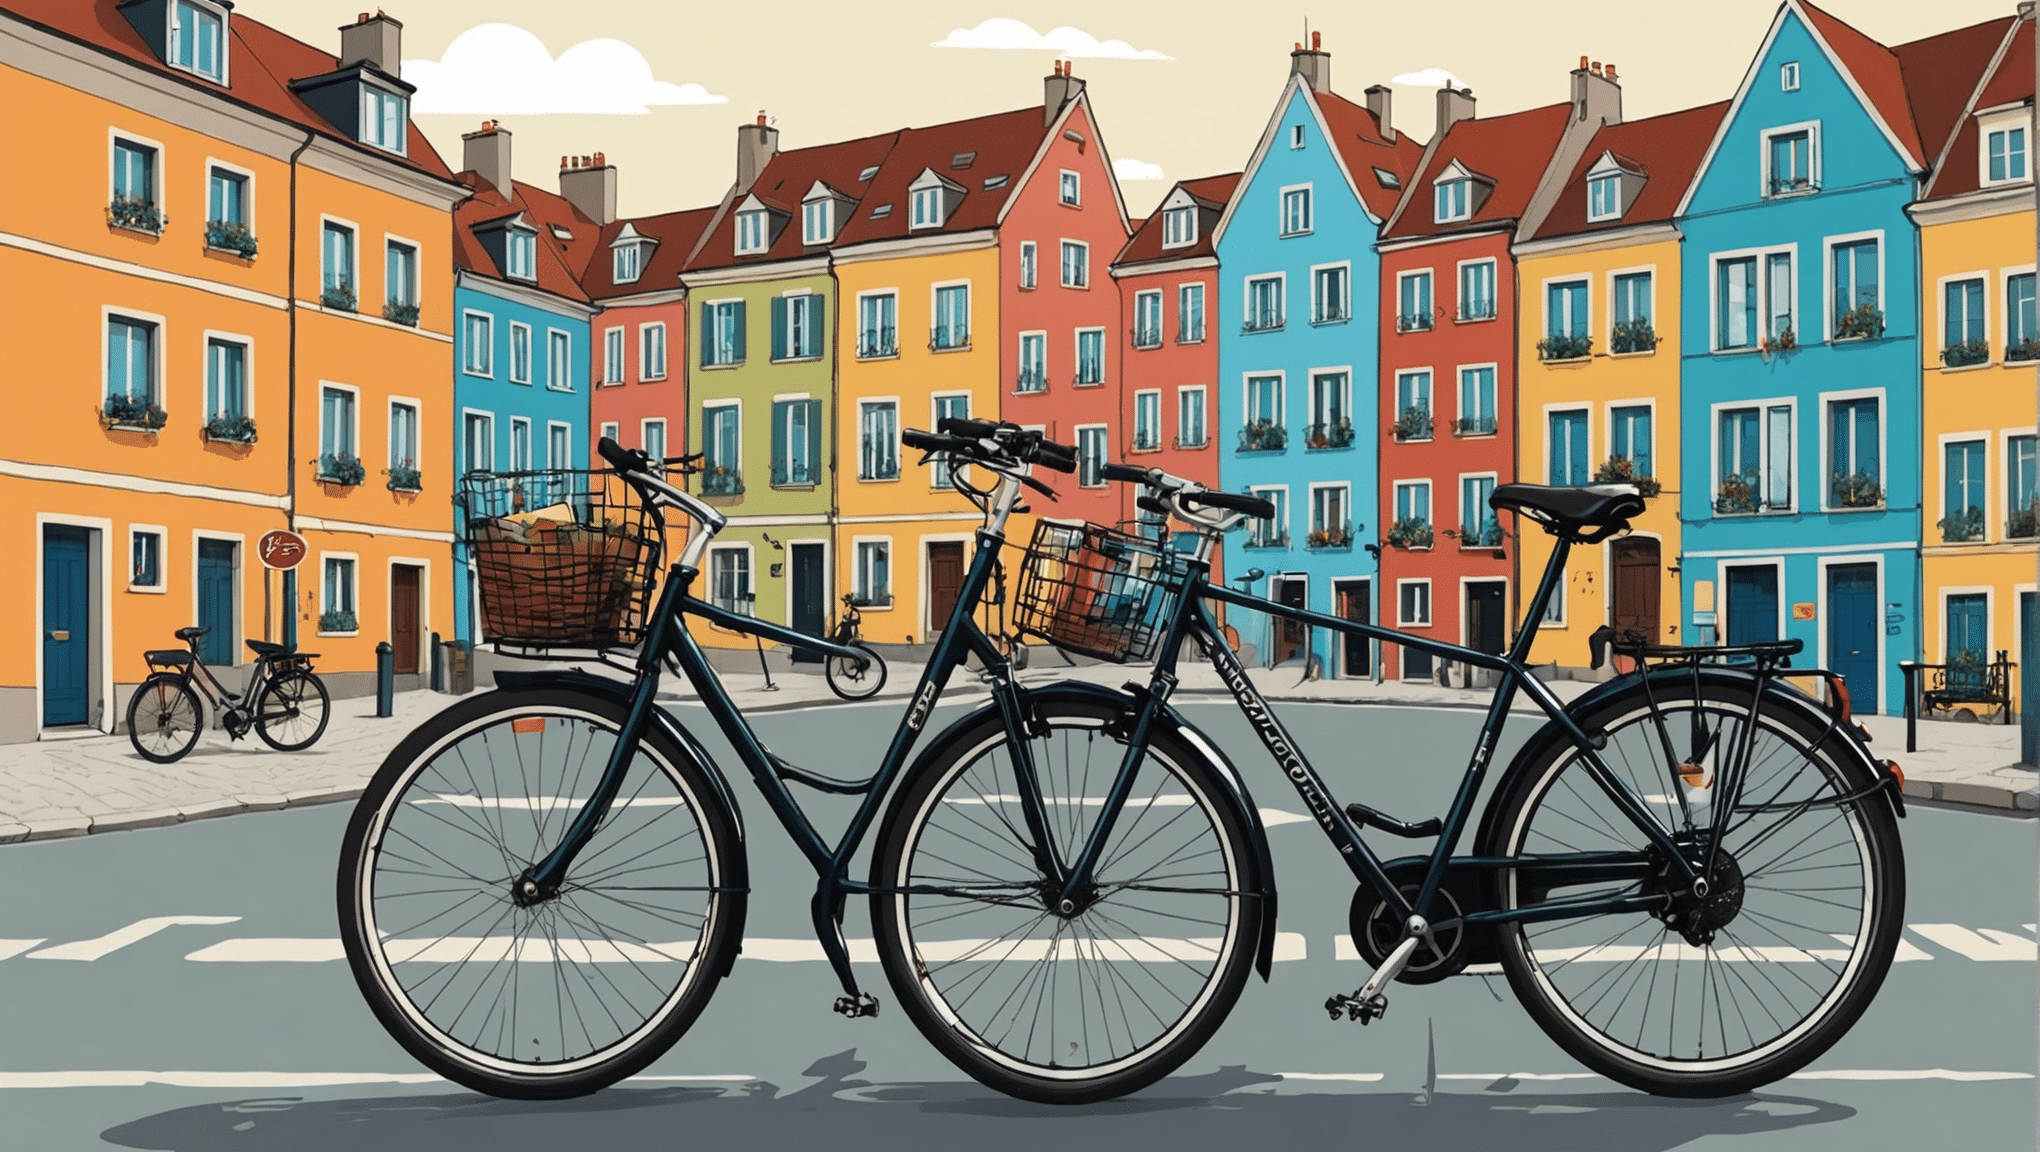 通过我们的完整指南，探索欧洲自行车旅行爱好者的必看目的地。令人惊叹的风景和独特的体验等待着您！